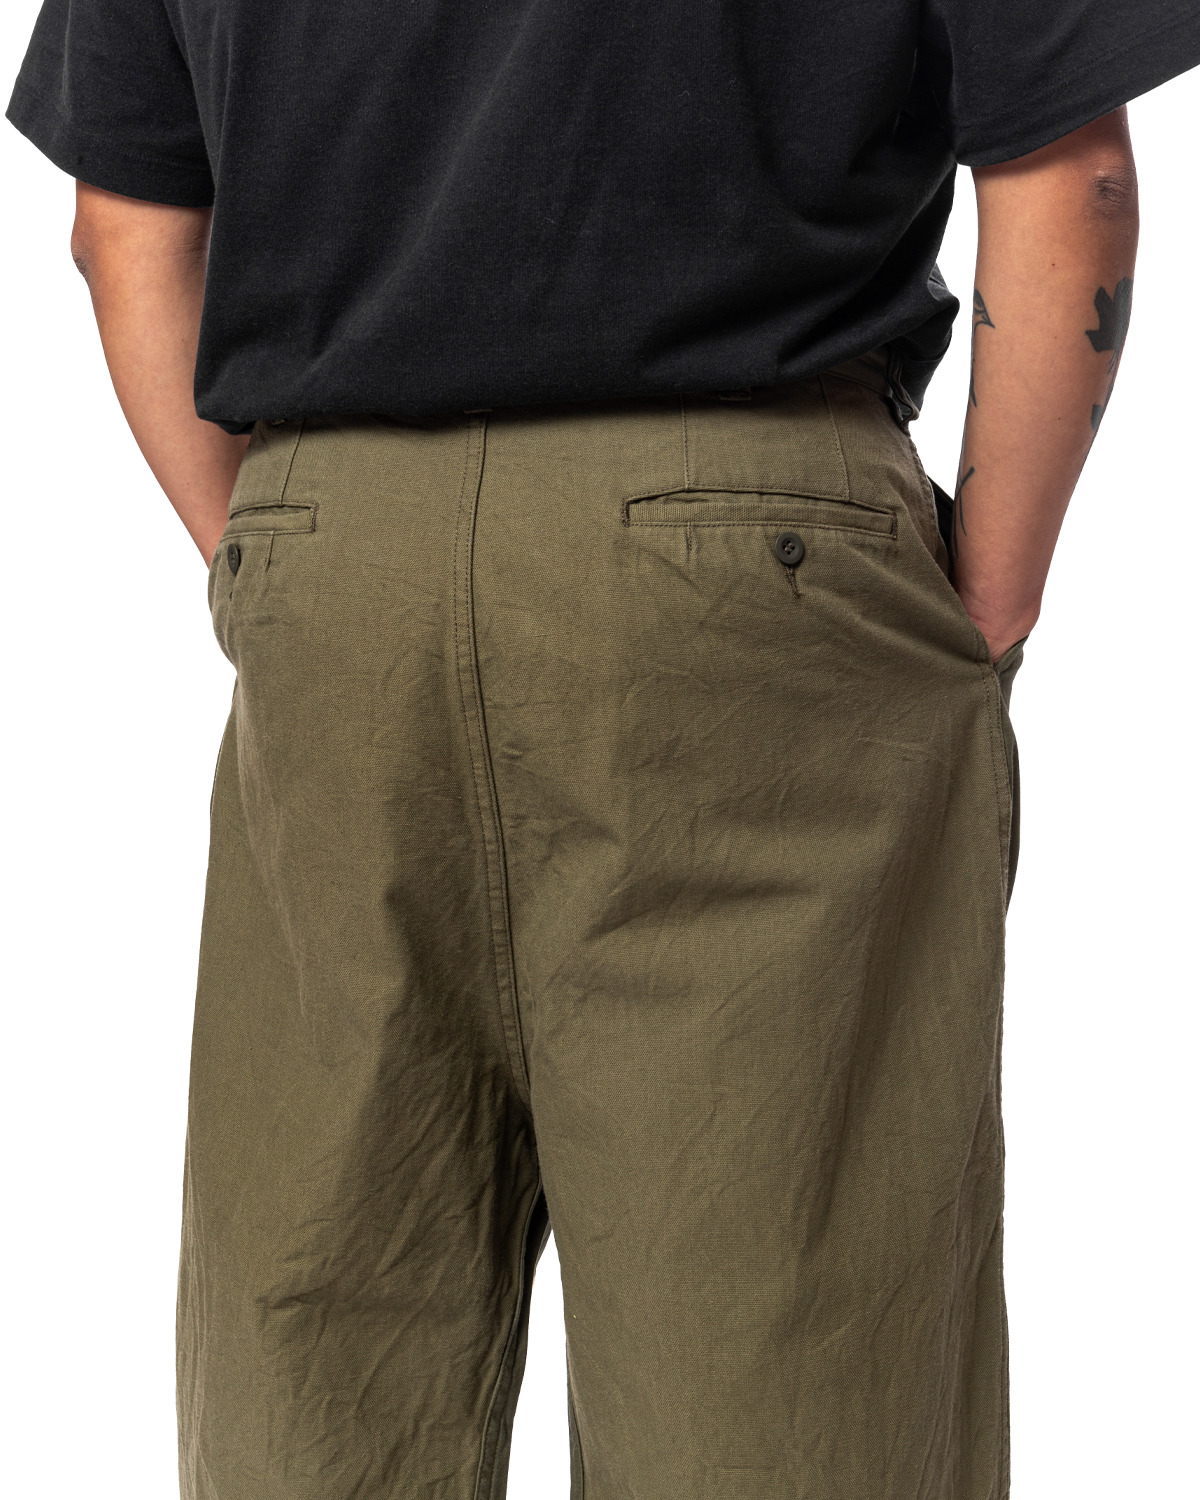 Khaki Paneled Trousers HL-P011-051 - 5